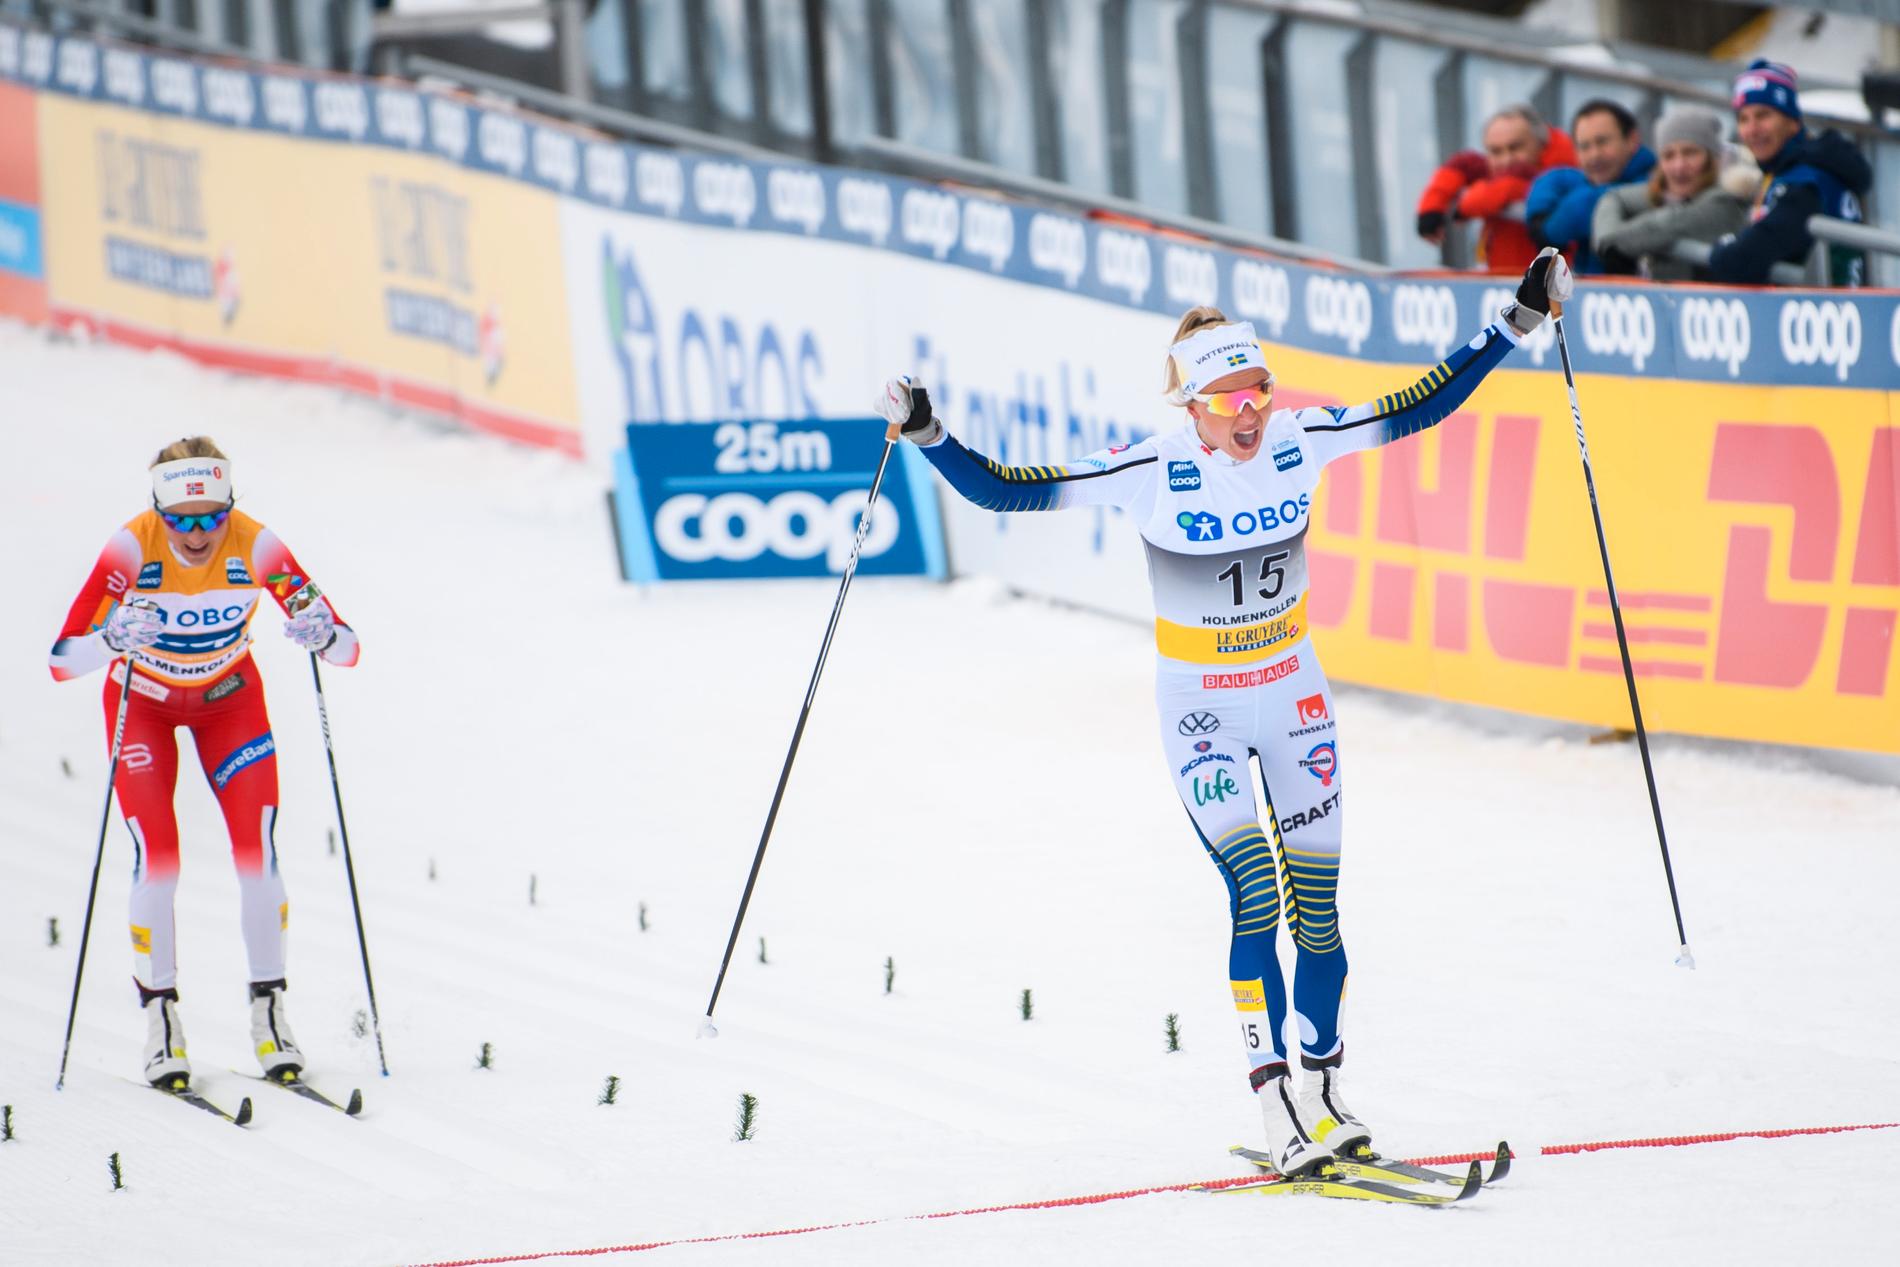 Frida Karlsson jubler for seier på oppløpet i Holmenkollen. Bak følger Therese Johaug.